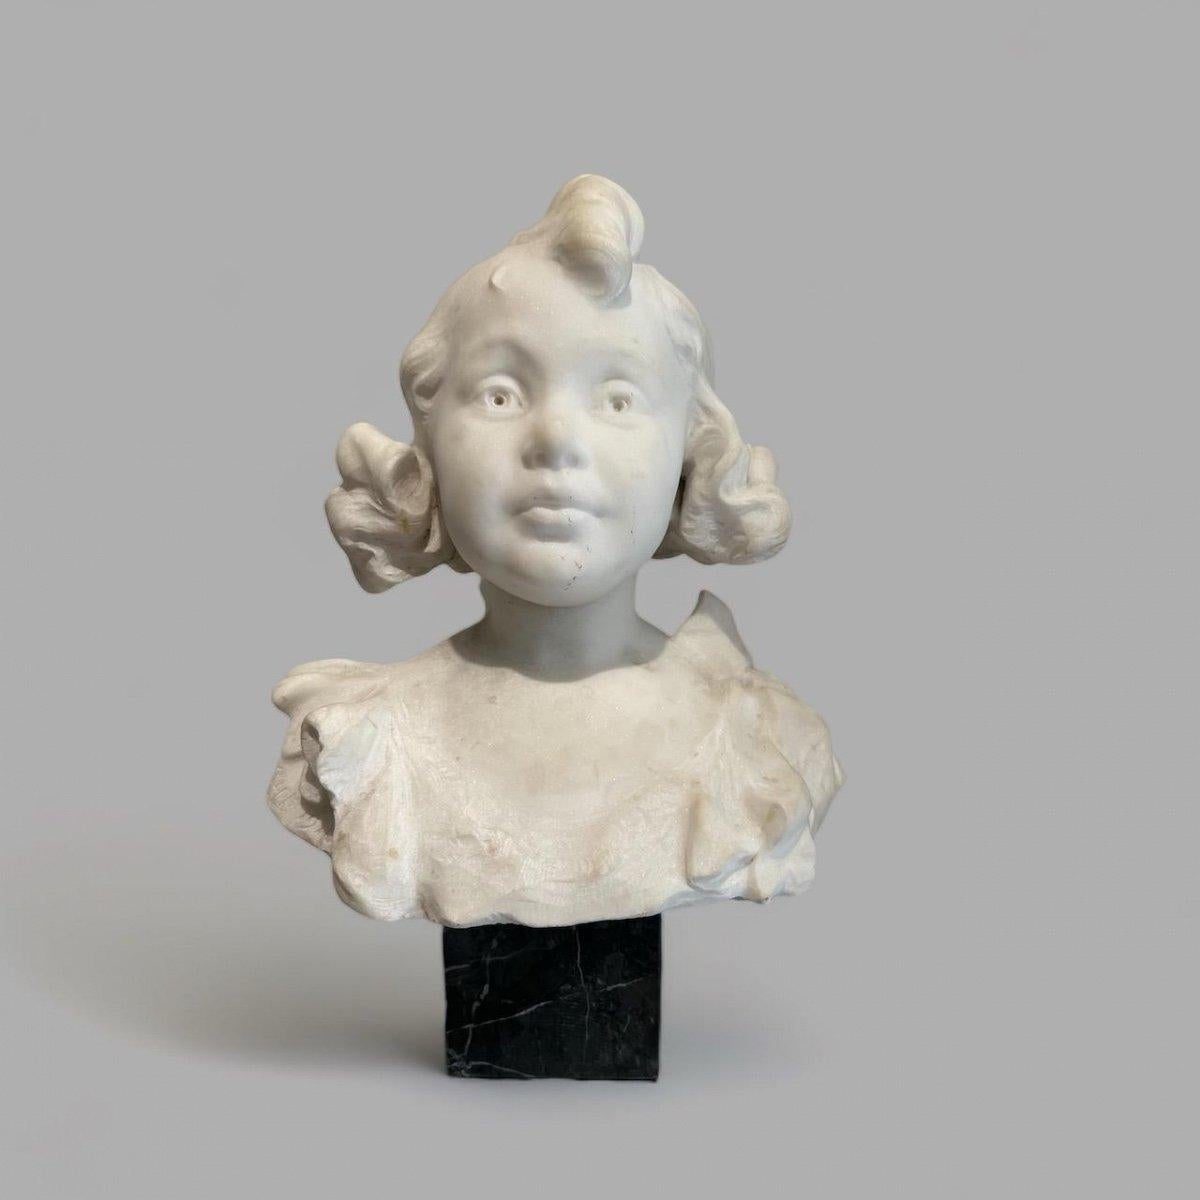 Diese Büste eines jungen Mädchens aus Carrara-Marmor aus dem späten 19. Jahrhundert fängt die Unschuld und den Charme im Gesicht der Dargestellten wunderbar ein. Die Skulptur strahlt eine bemerkenswerte Ausdruckskraft aus, die sich besonders in den